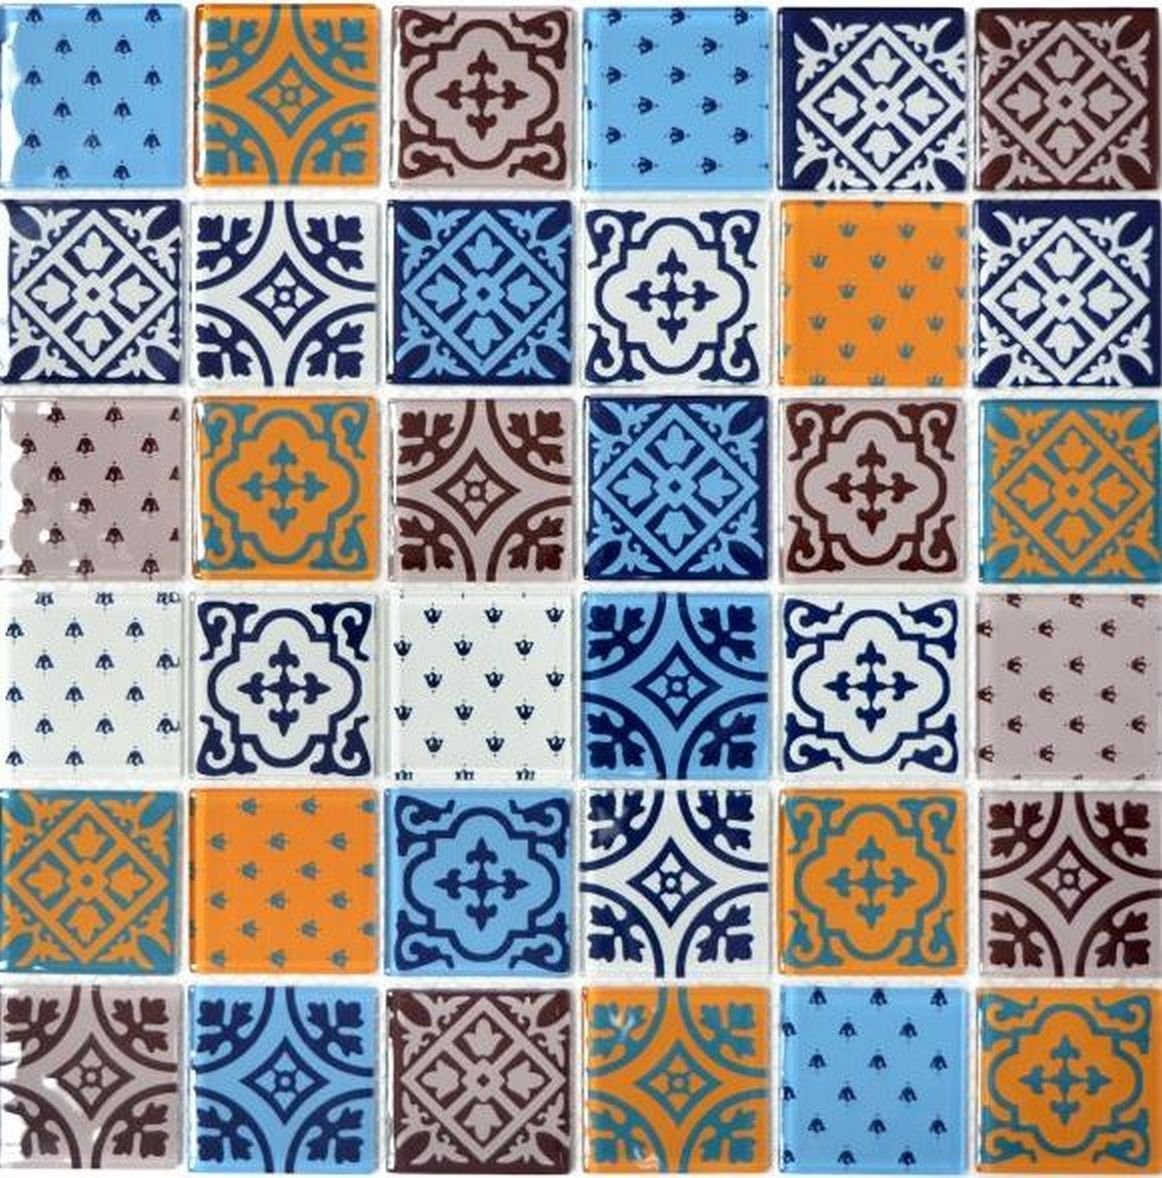 Mosani Mosaikfliesen Glasmosaik Retro Vintage grau Mosaikfliesen blau weiss orange